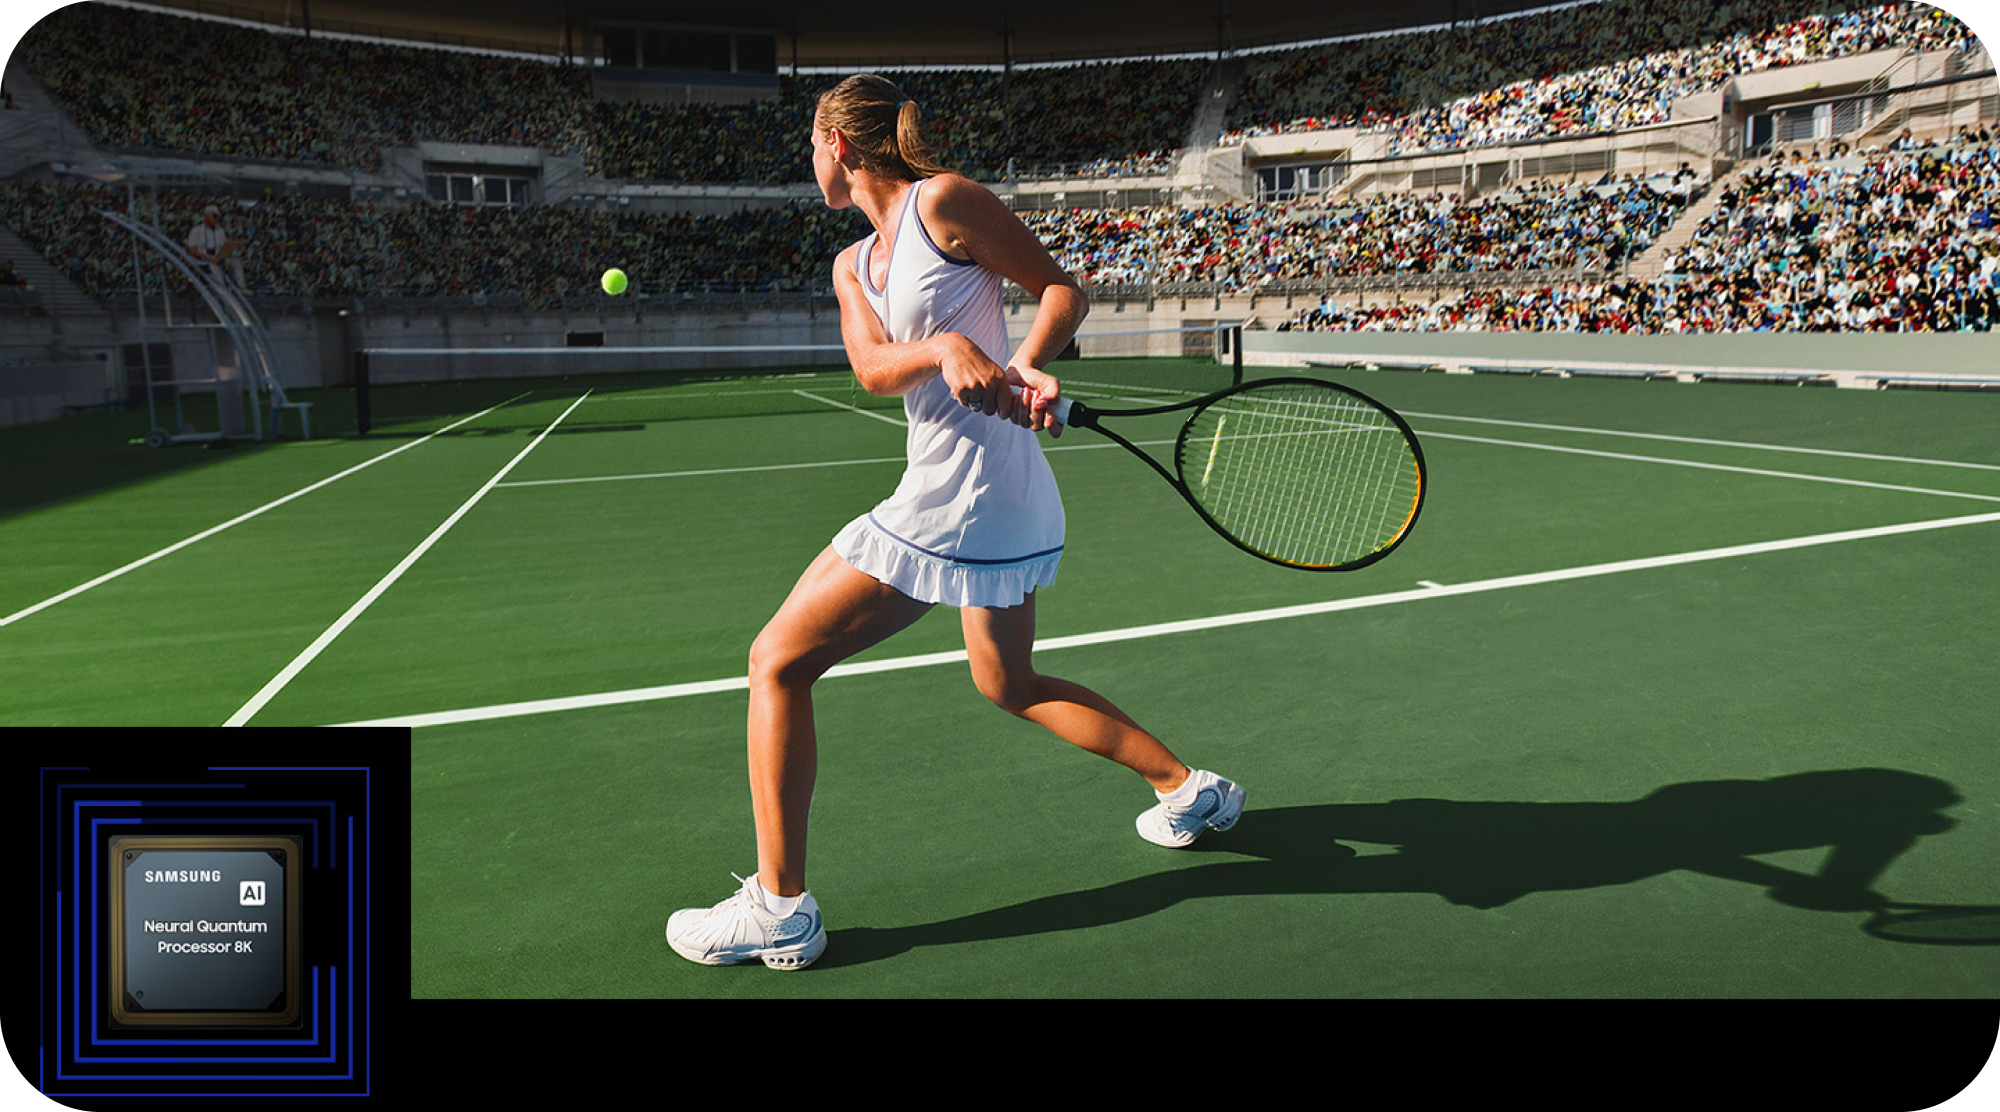 Samsung TV med Neural Quantum Processor 8K og en pige, der spiller tennis